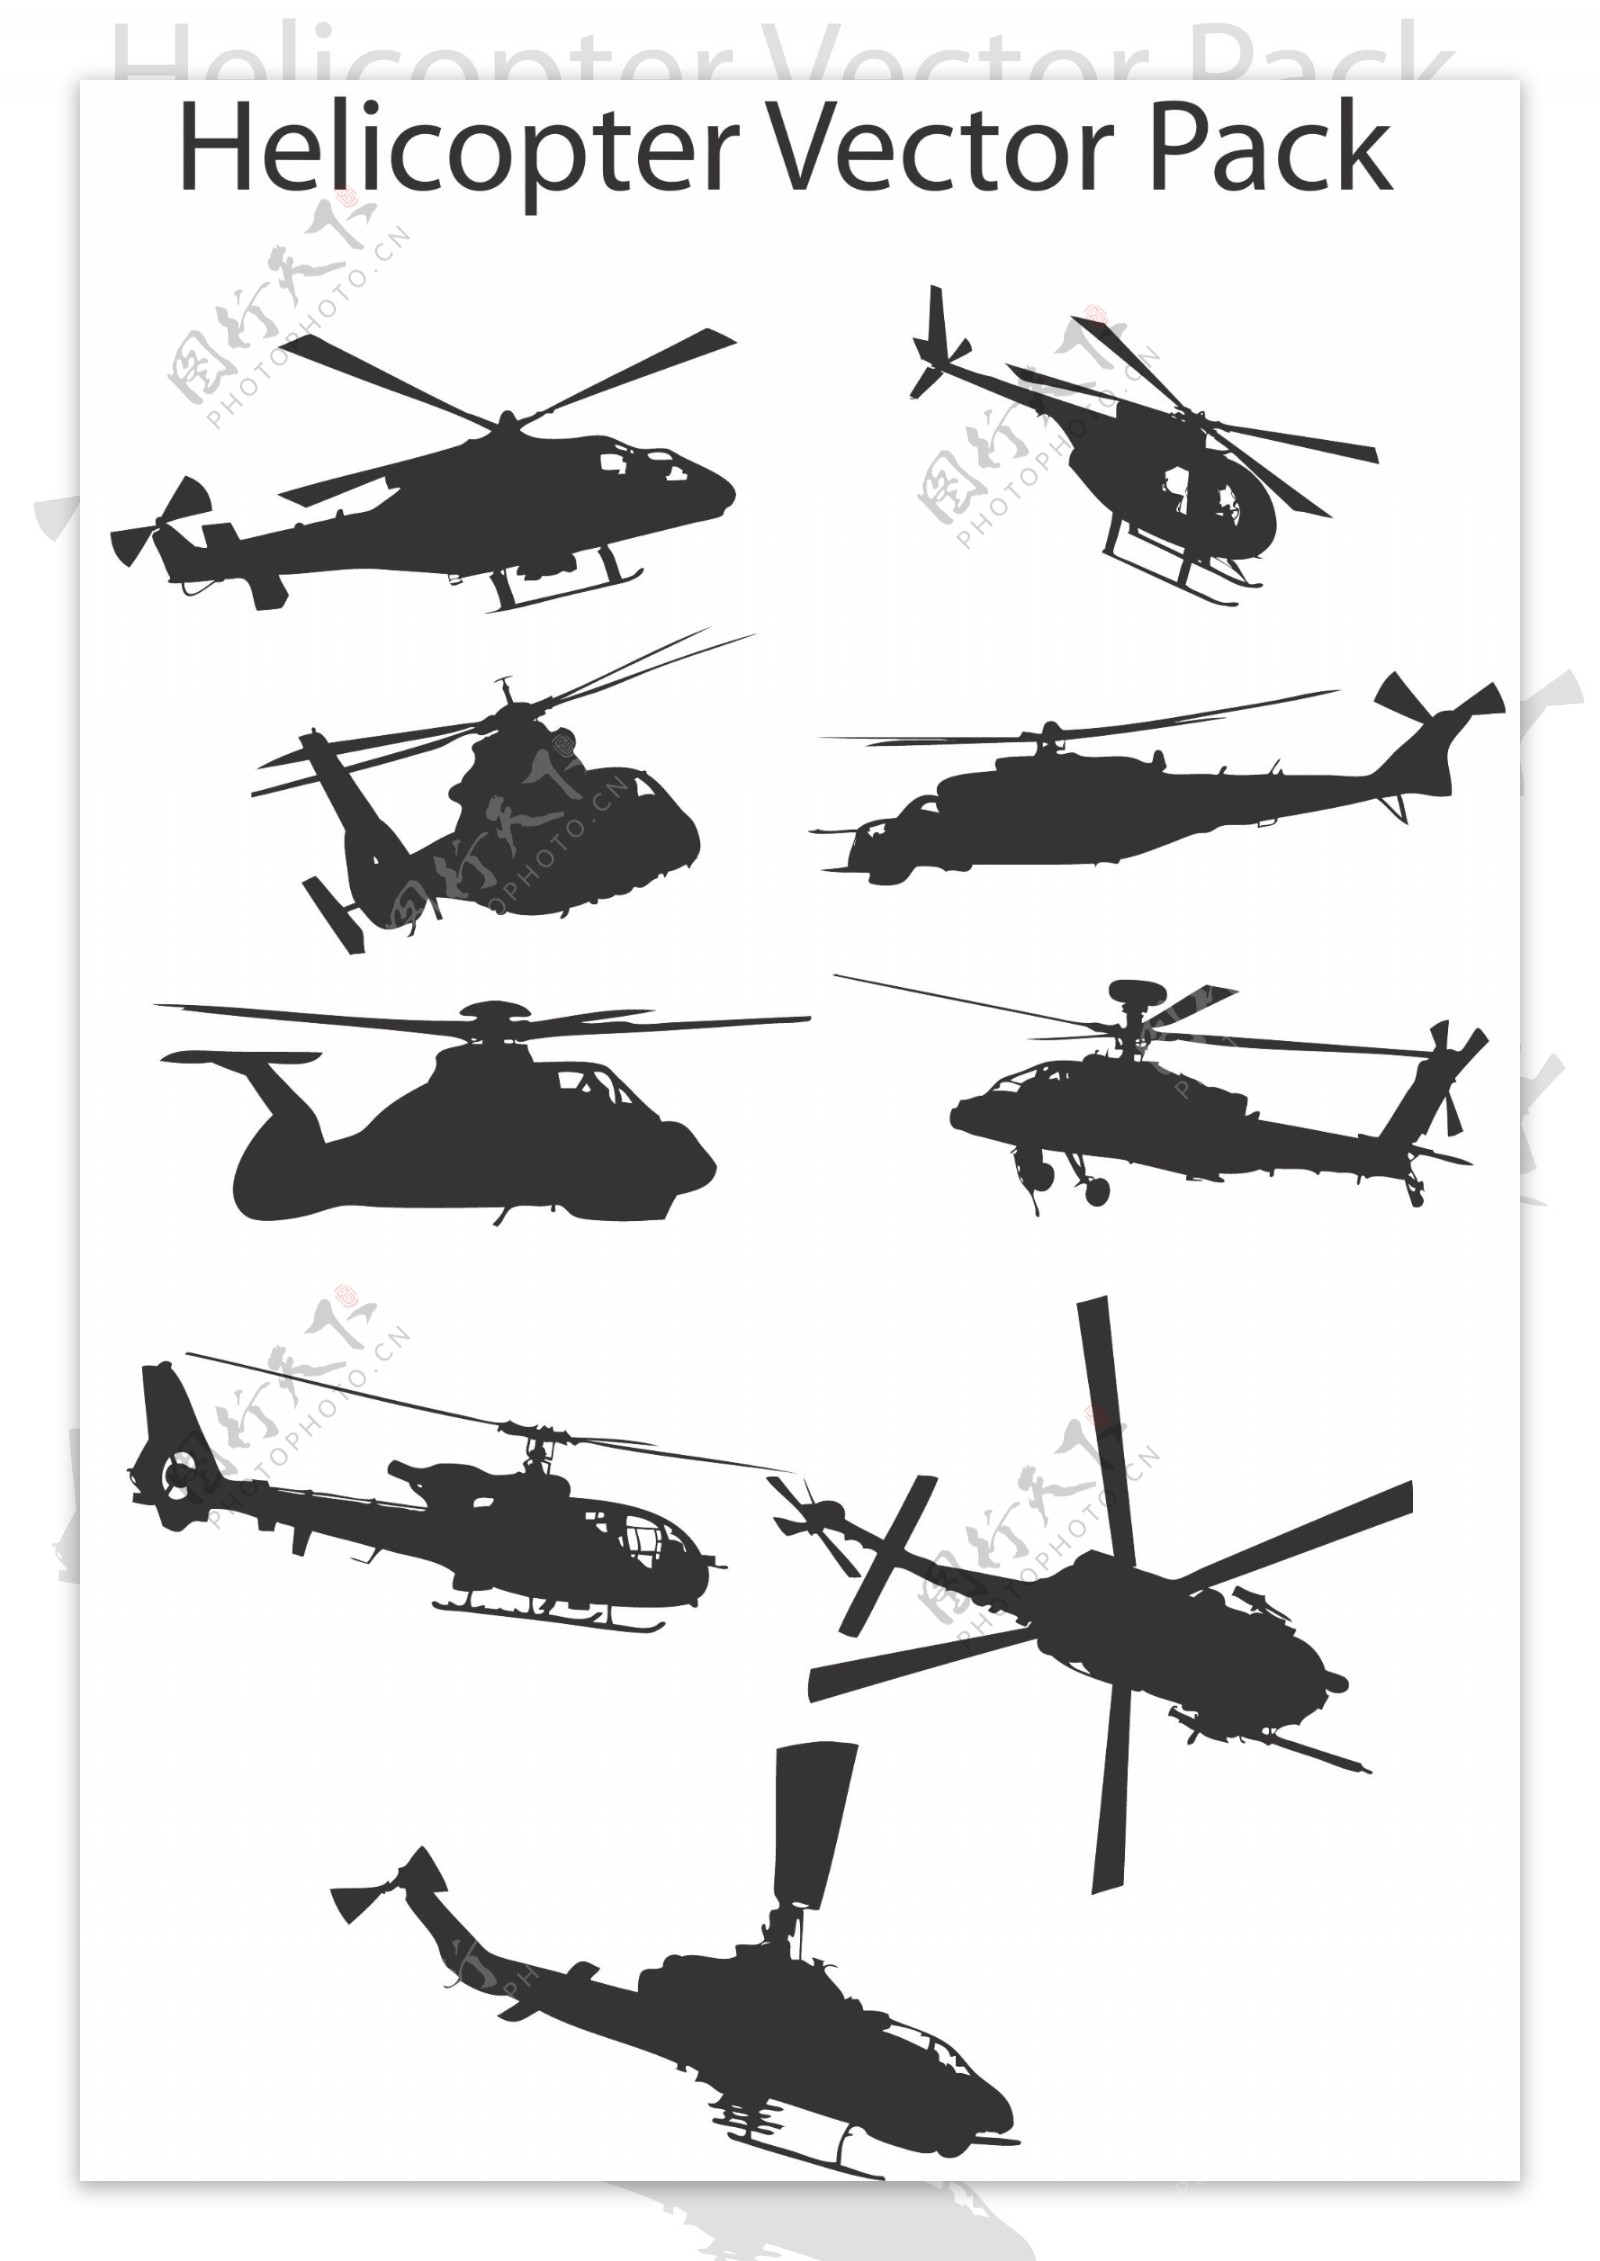 各种直升飞机示意图